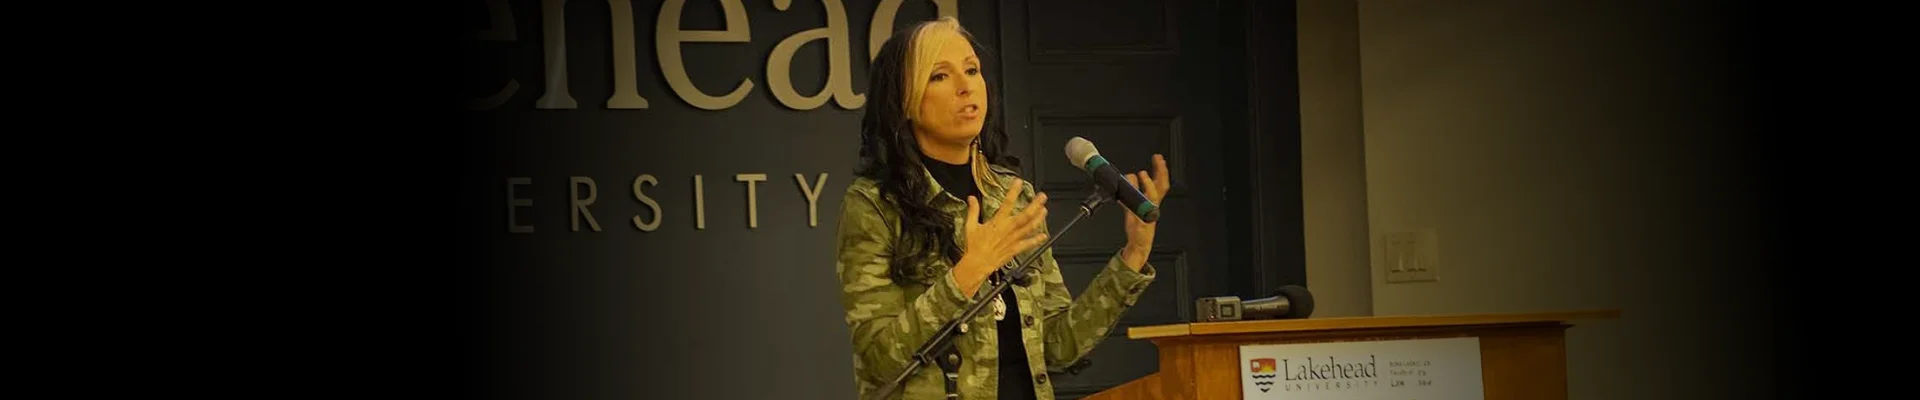 Pam speaking at Lakehead University.